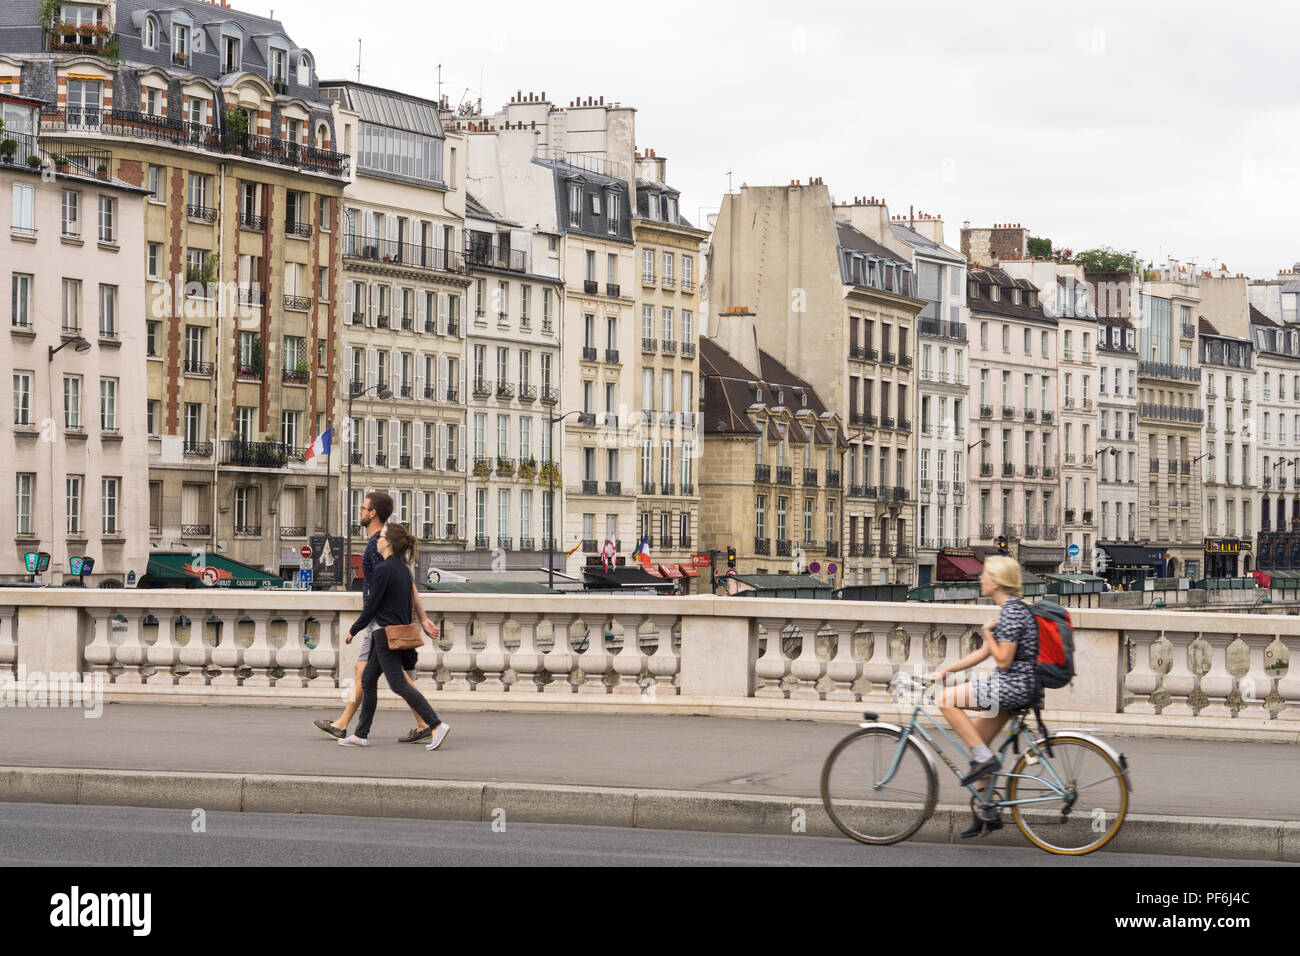 La ville de Paris - femme vélo sur le pont Saint Michel, bâtiments du quai des Grands Augustins sont à l'arrière-plan. Paris, France, Europe. Banque D'Images